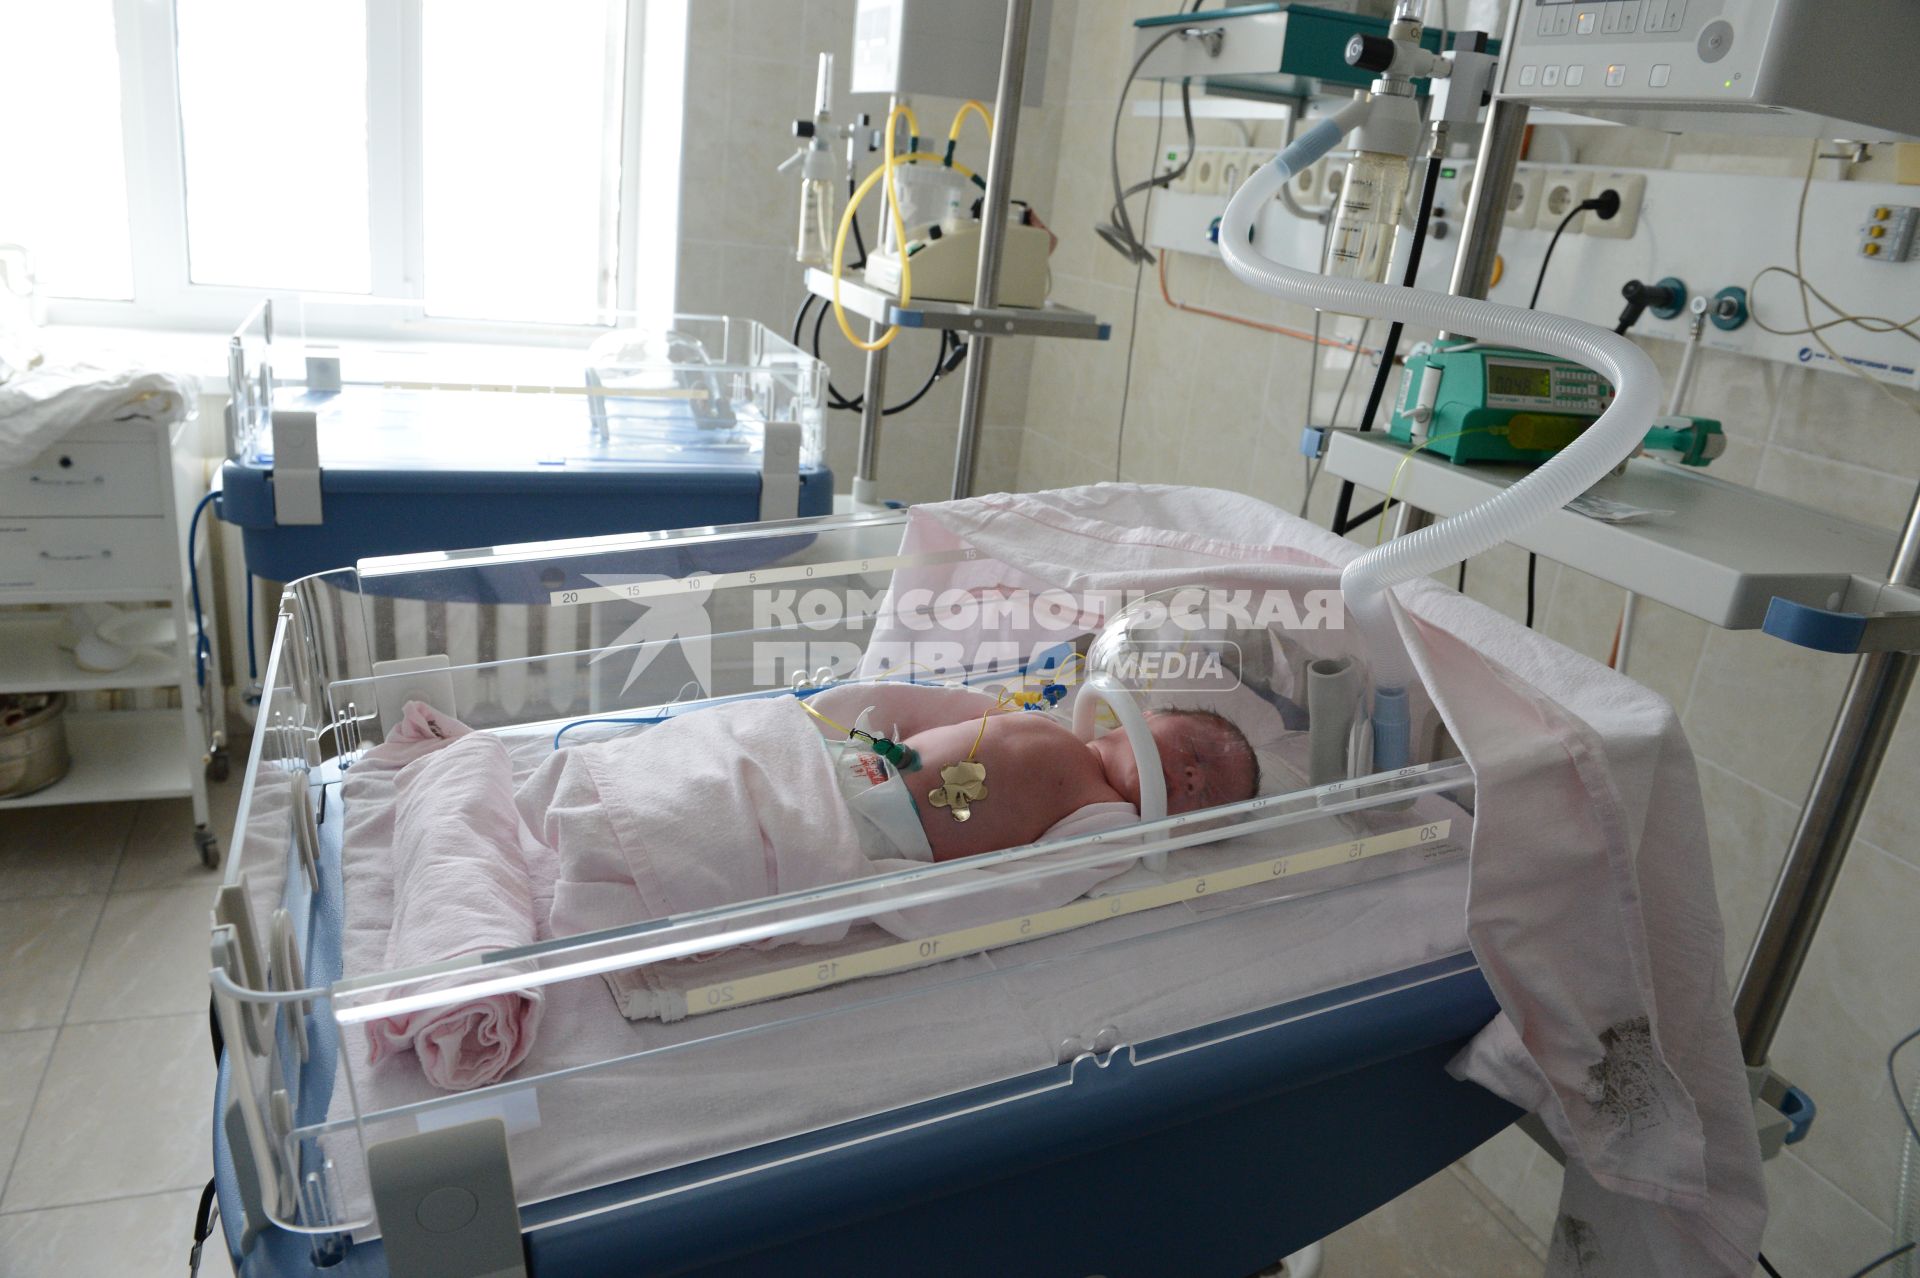 Акушерский стационар. Новое отделение реанимации новорожденных. На снимке: новорожденный в инкубаторе.